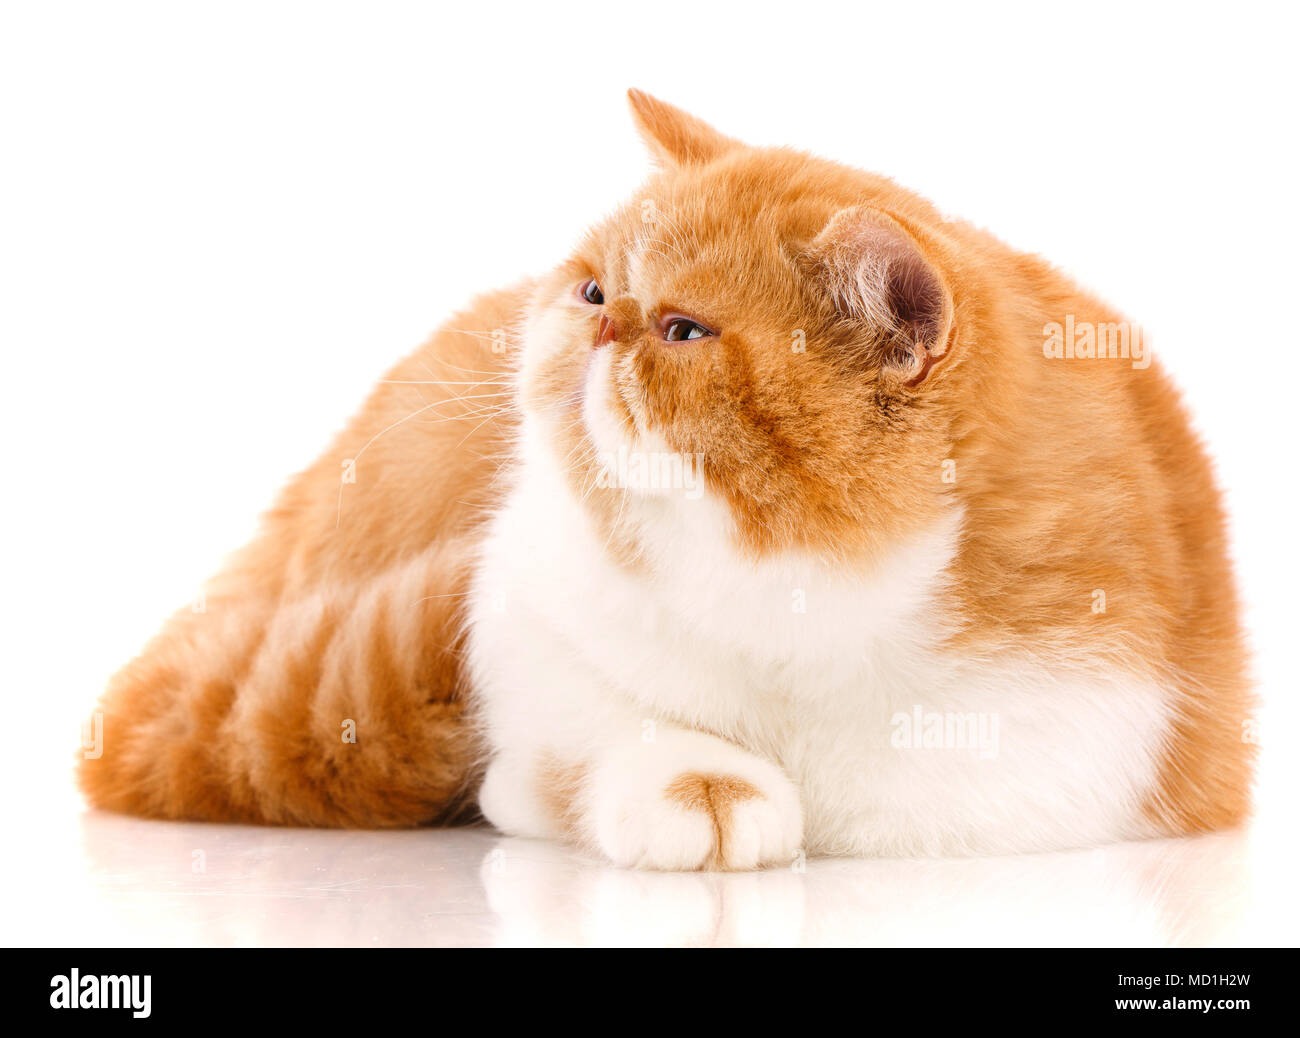 Tier, Cat, pet-Konzept - exotische Katze auf einem weißen Hintergrund. Stockfoto